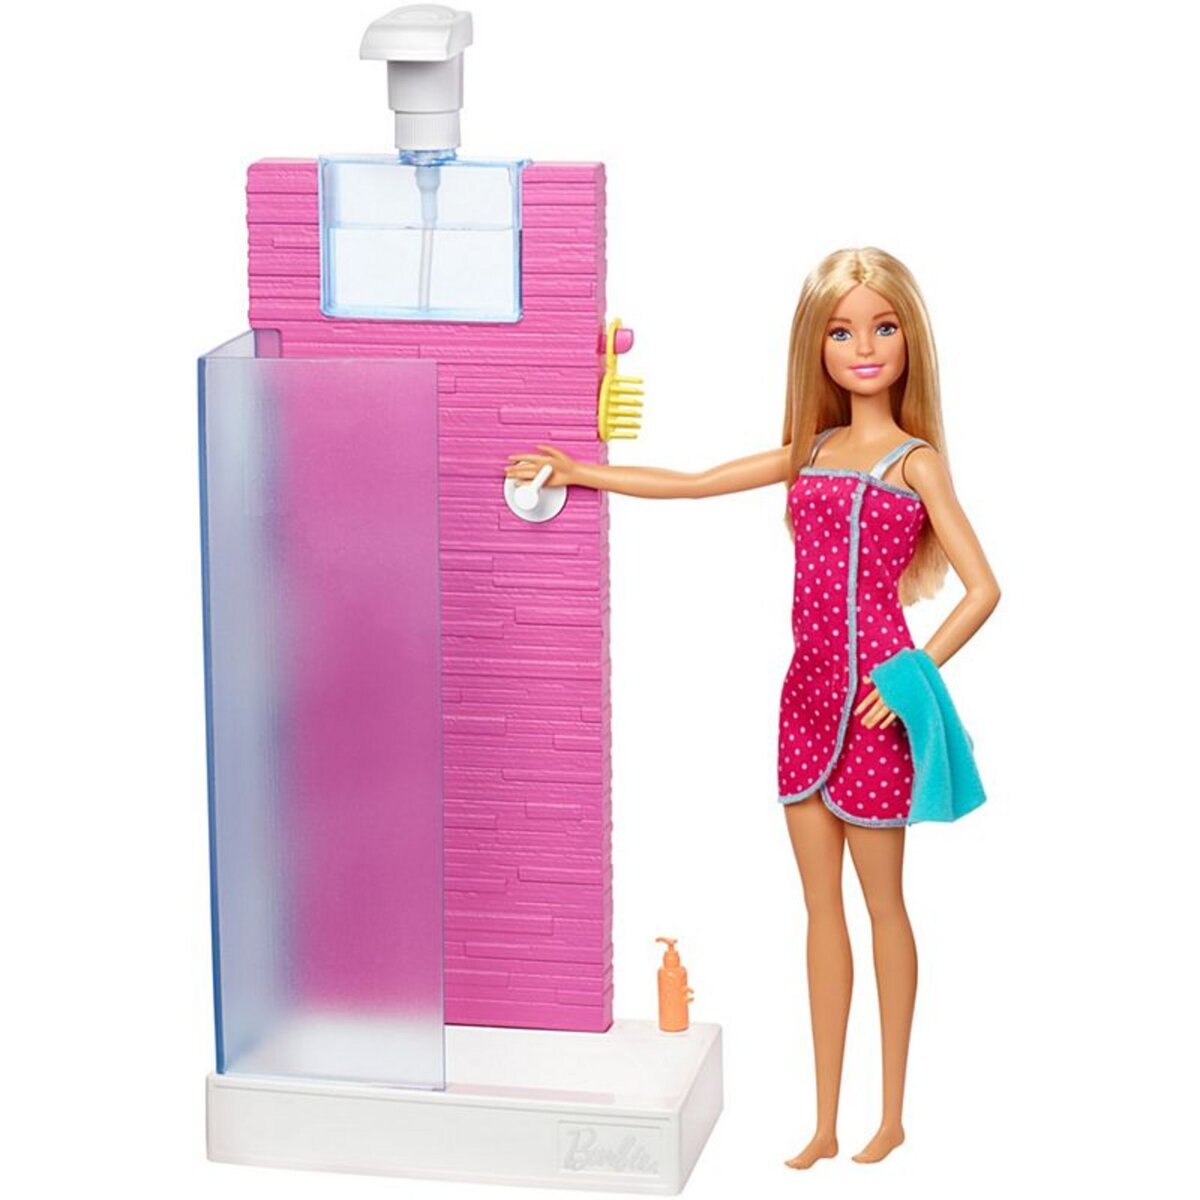 BARBIE Coffret salle de bain douche avec poupée, meubles et accessoires - Barbie